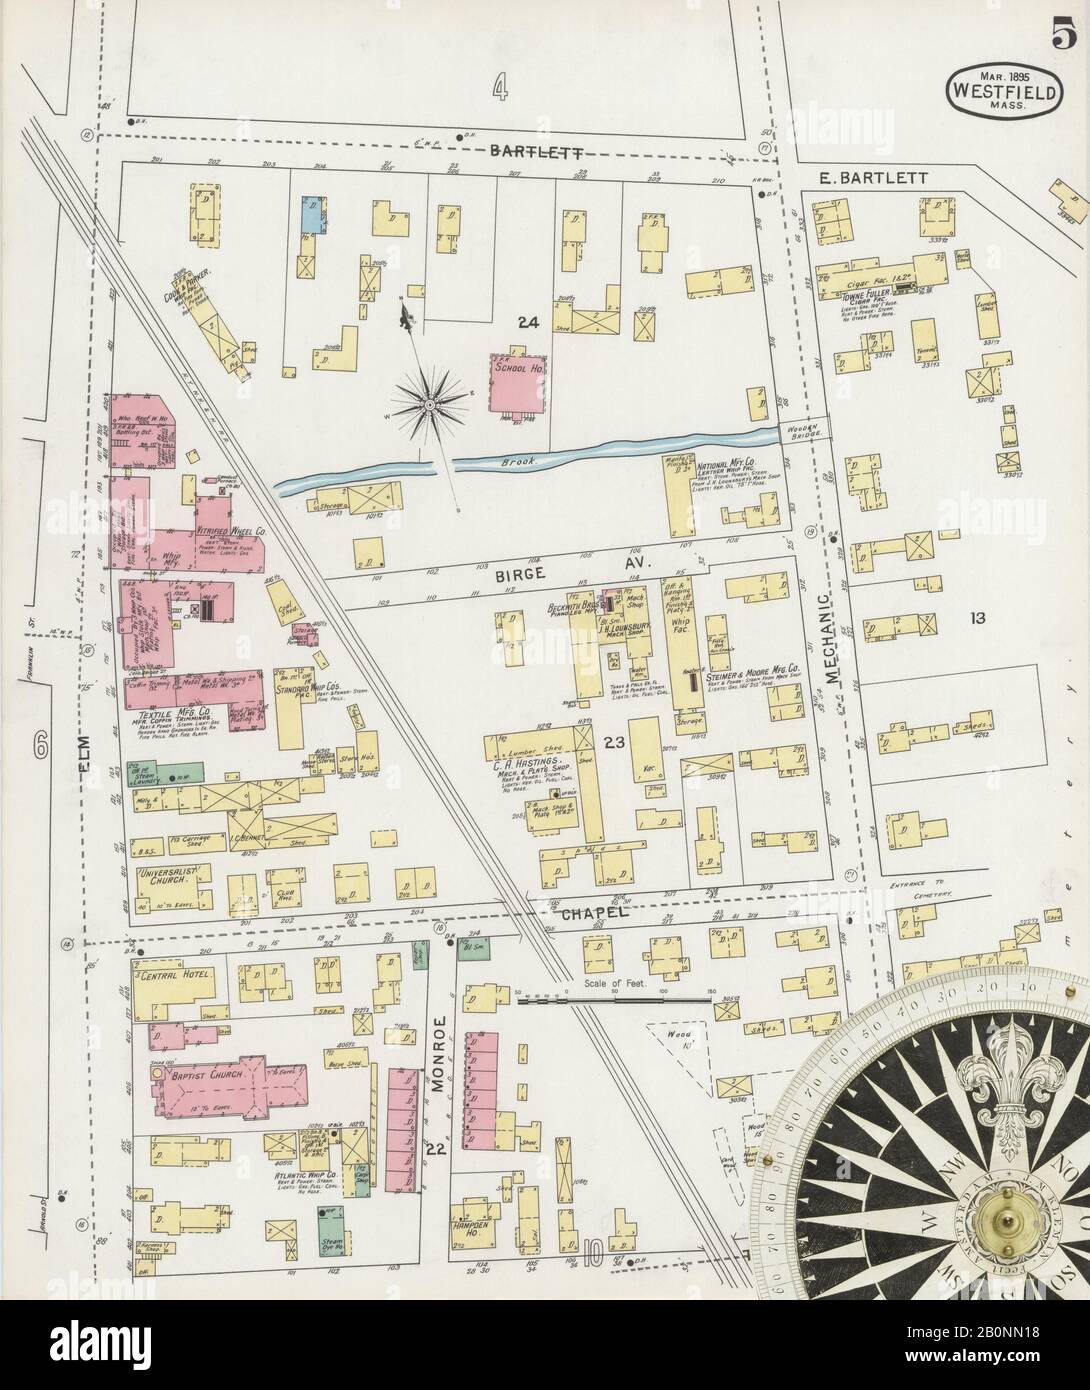 Bild 5 von Sanborn Fire Insurance Map aus Westfield, Hampden County, Massachusetts. Feb. 12 Blatt(e), Amerika, Straßenkarte mit einem Kompass Aus Dem 19. Jahrhundert Stockfoto